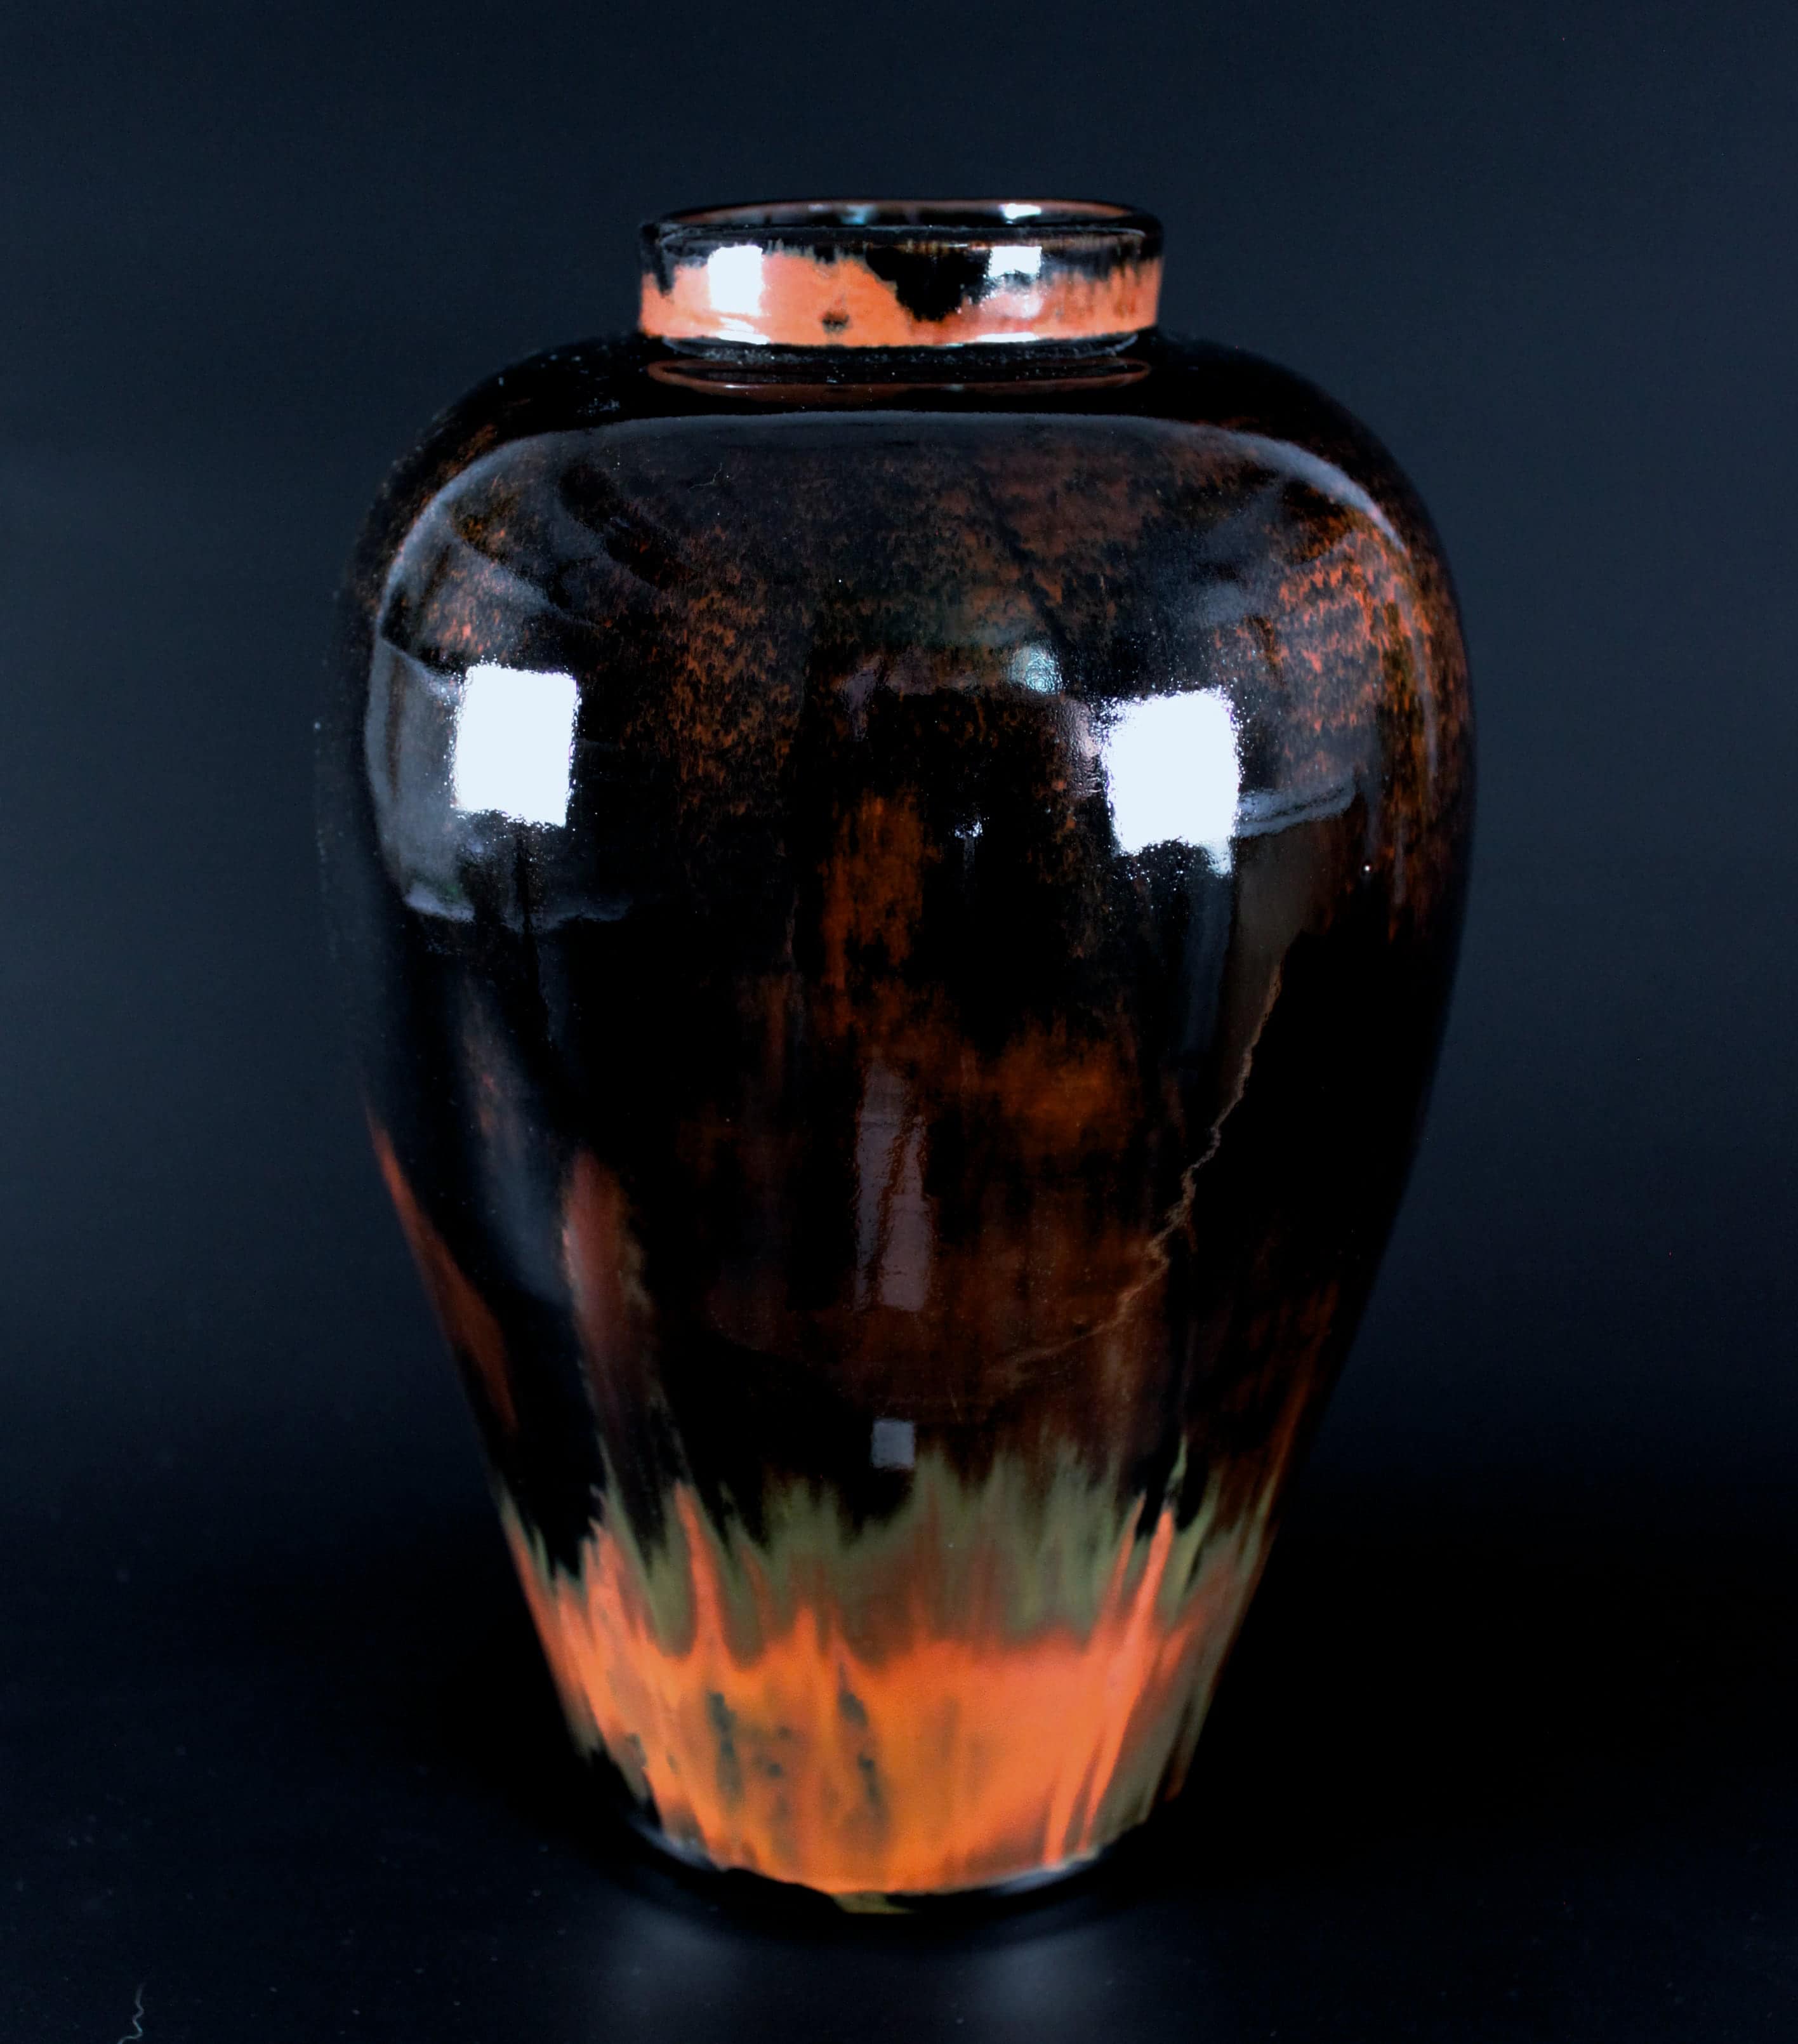 Fotografi av keramikvas med flerfärgad glasyr i mörkt brunt och rött.